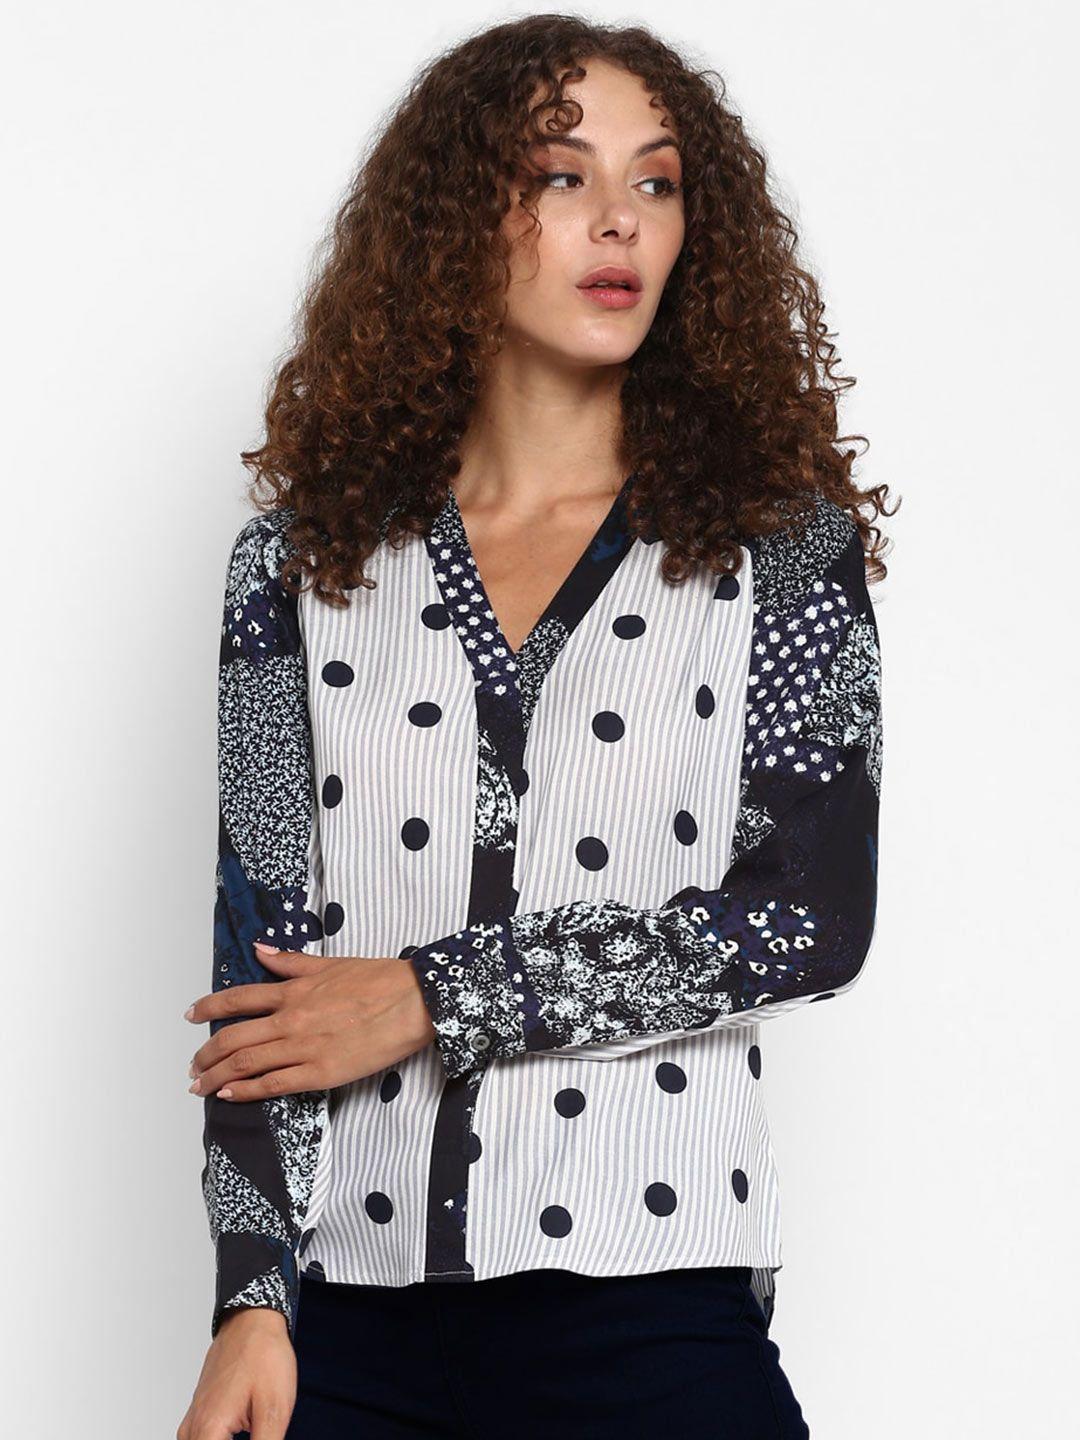 taurus polka dots printed shirt style top